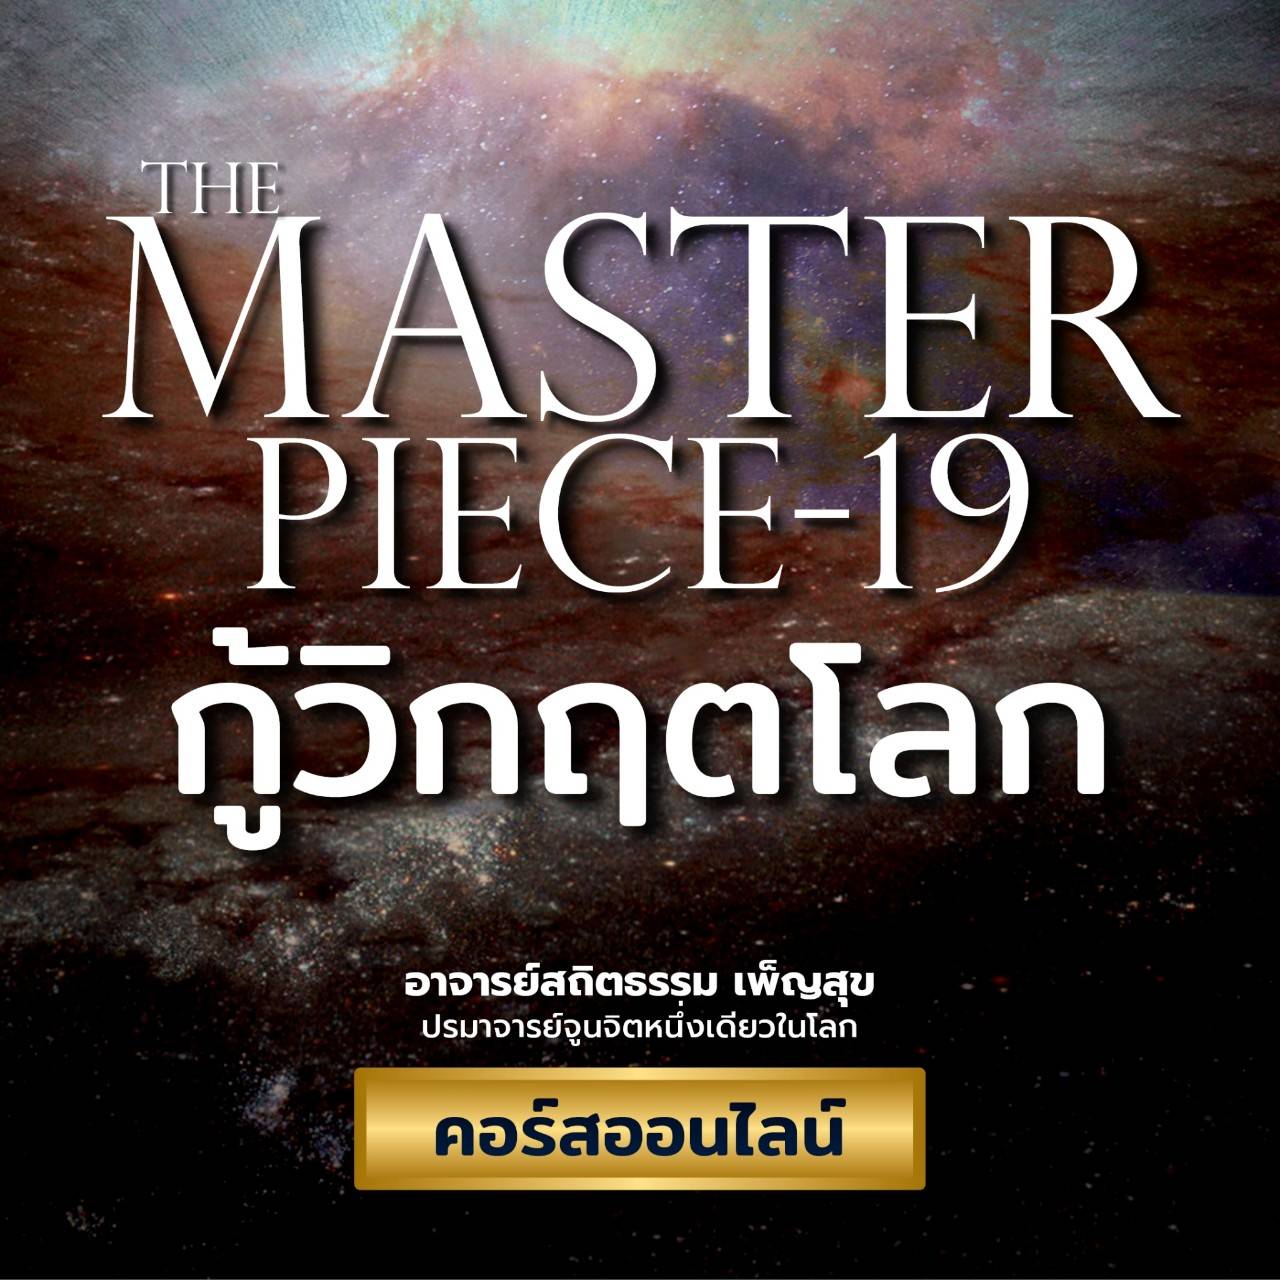 The Master Piece 19 - กู้วิกฤติโลก อสถิตธรรม เพ็ญสุข